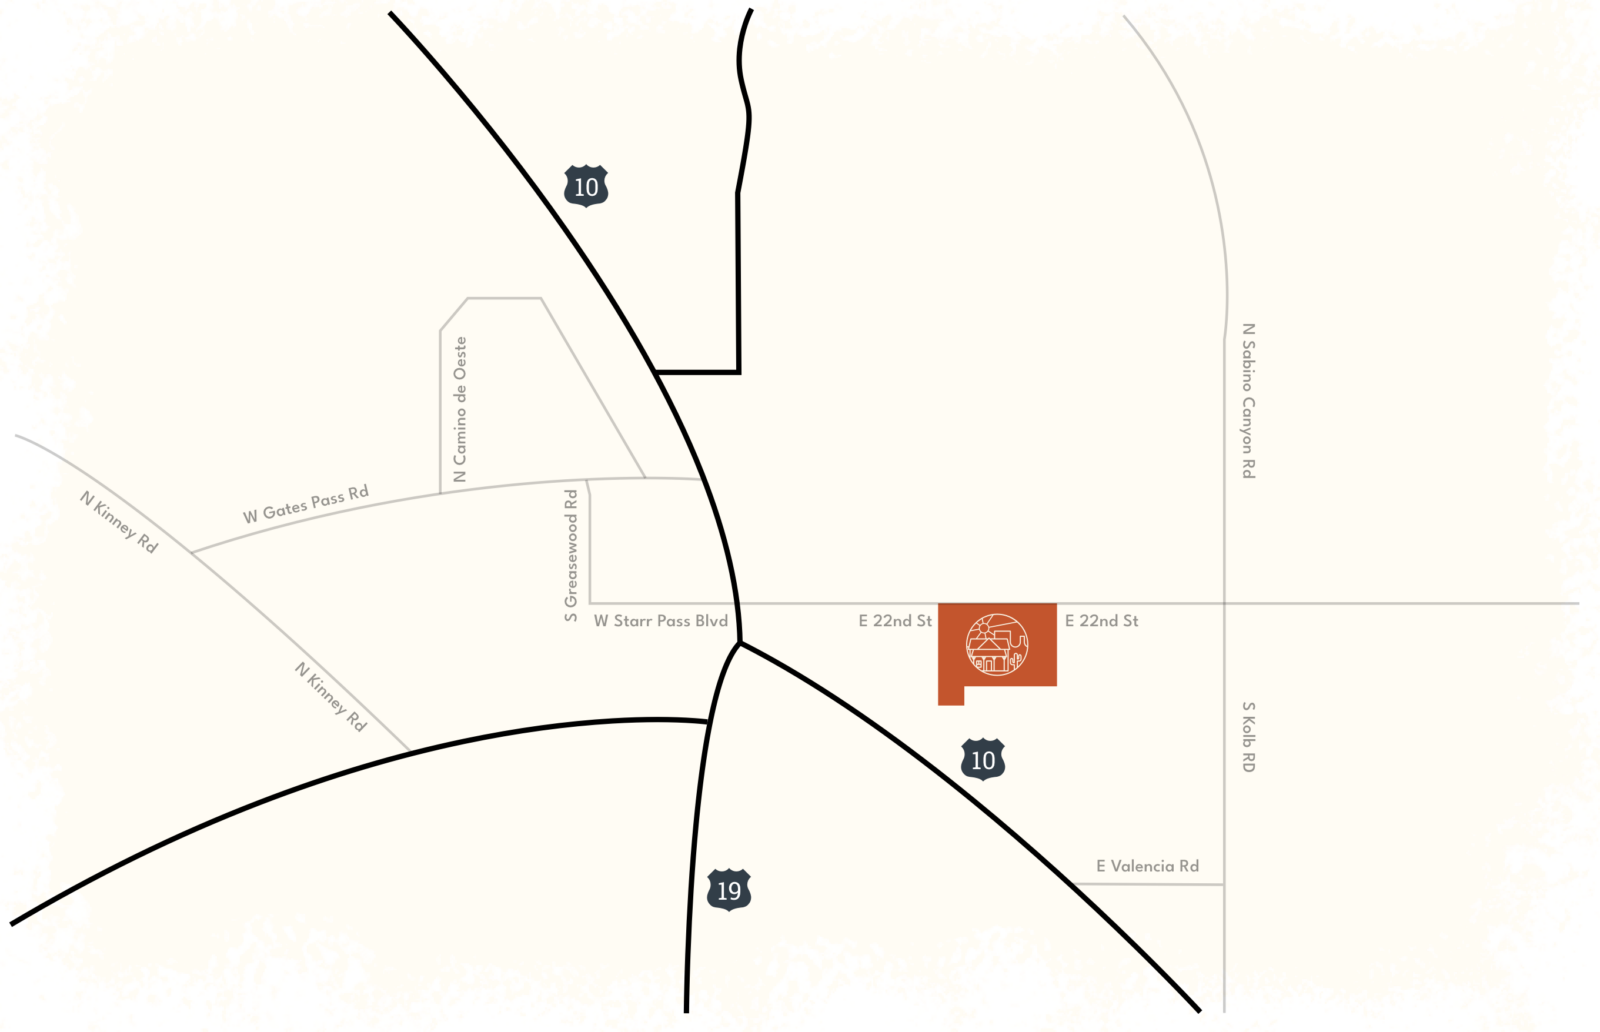 map of tuscon apartment